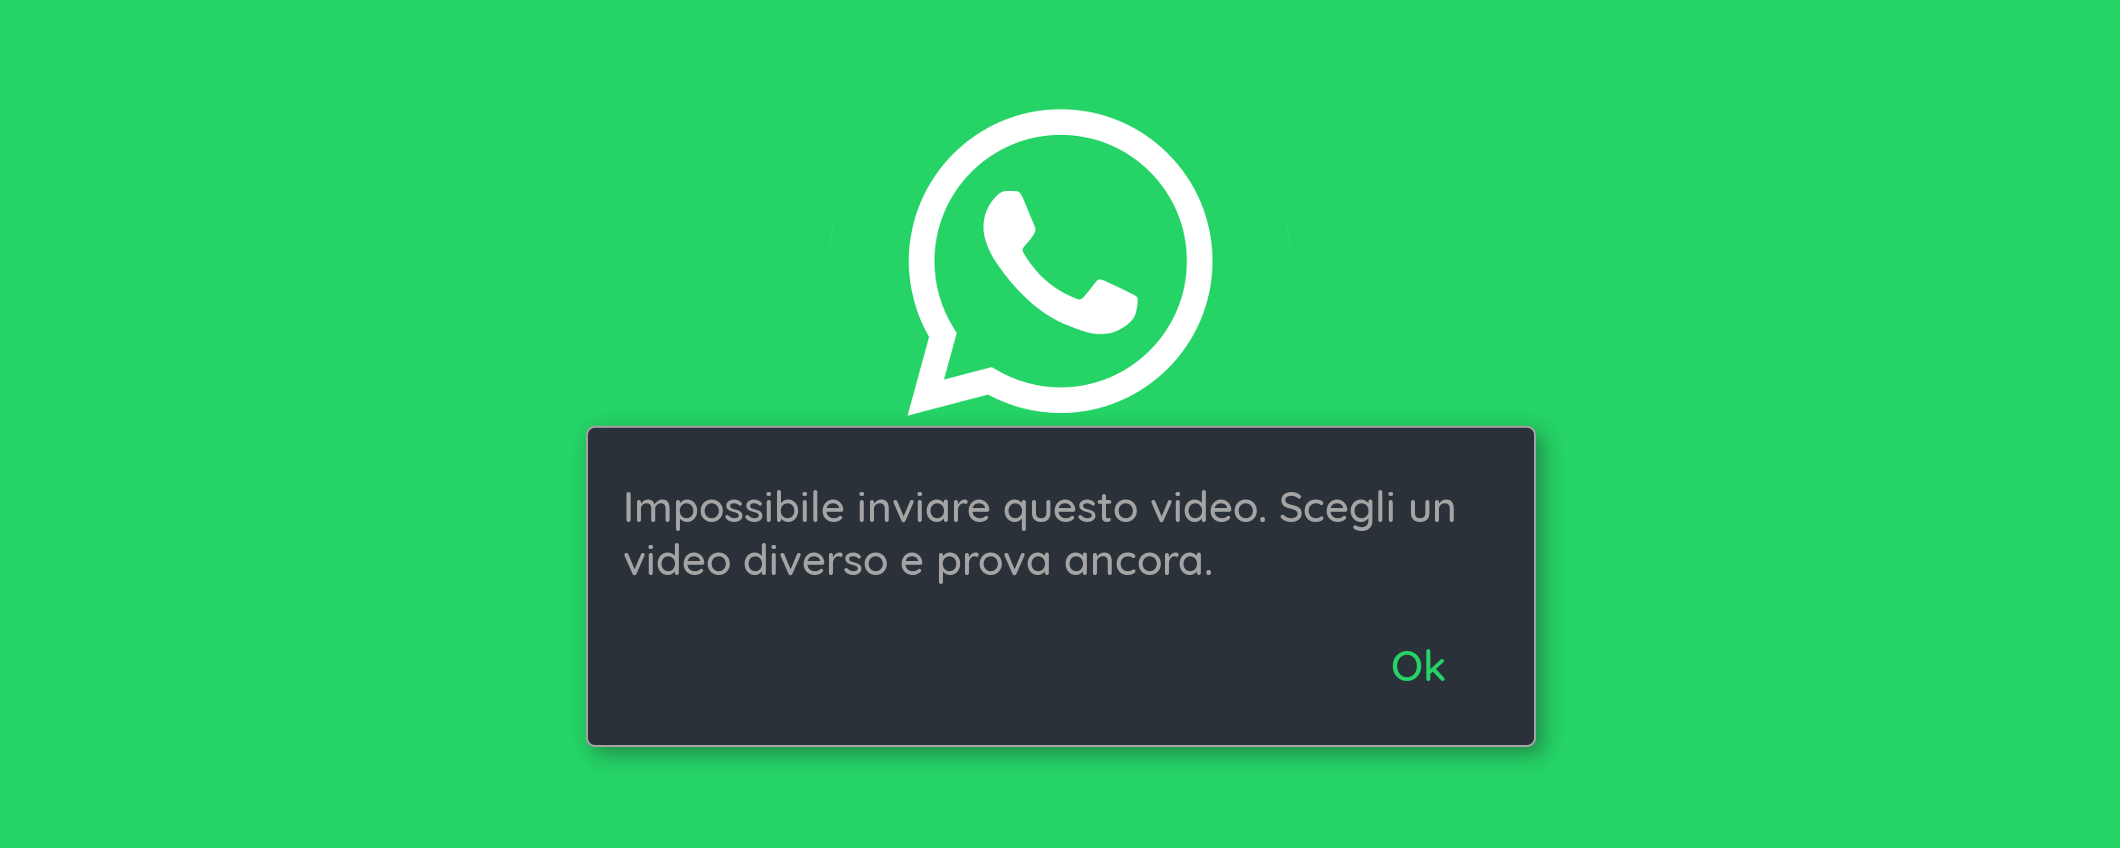 WhatsApp non vuole proprio saperne di inviare questi video